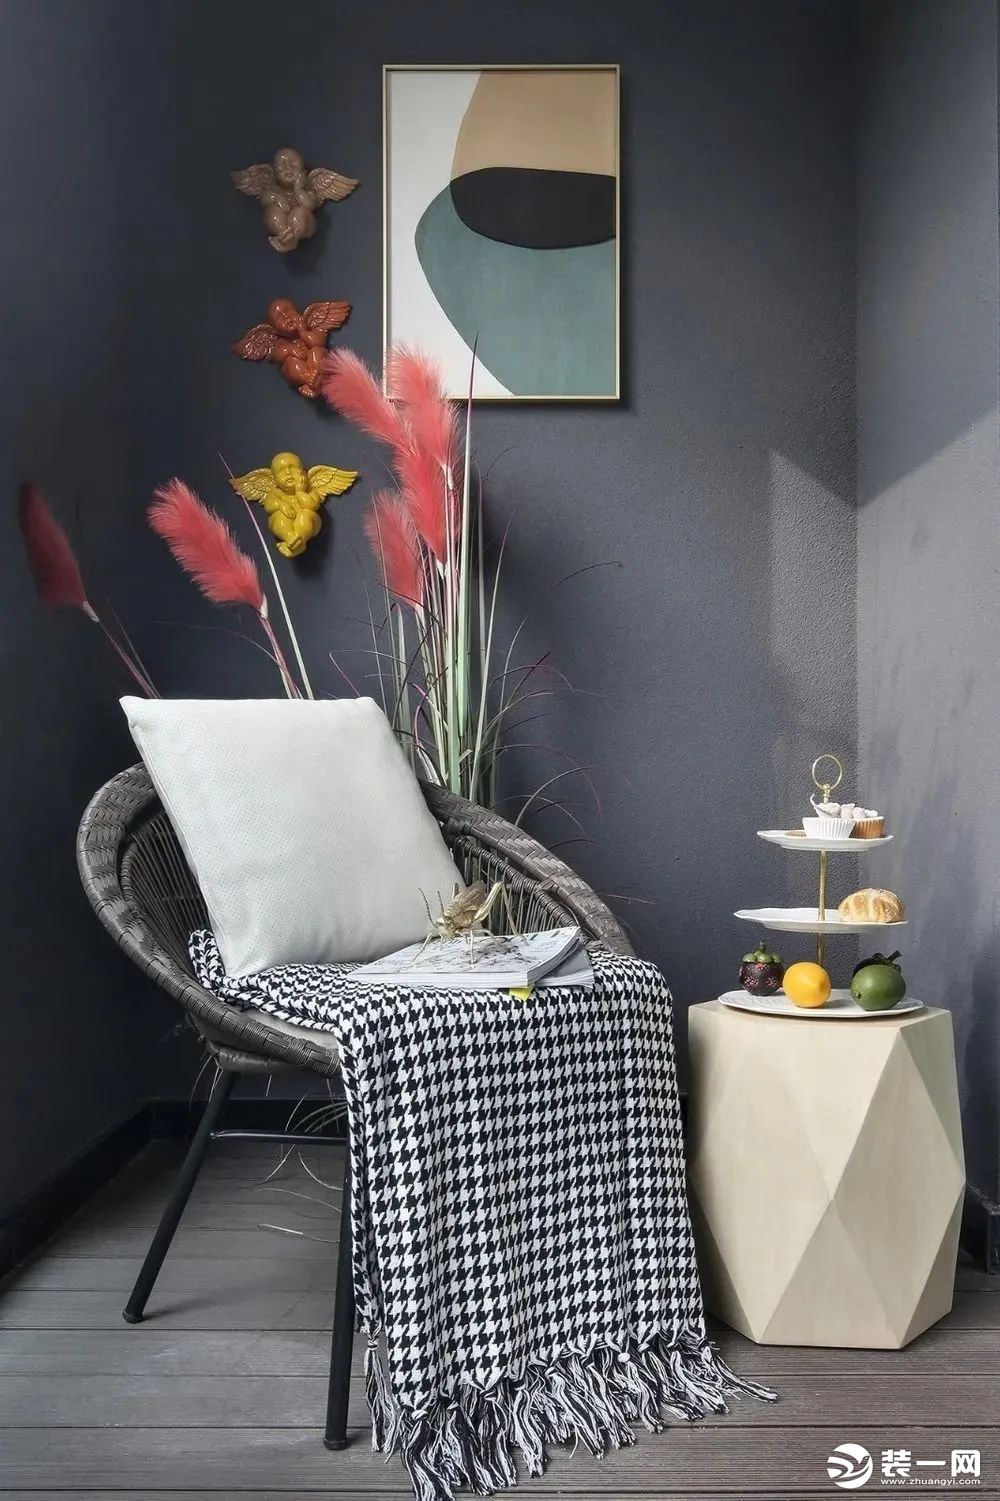 阳台在灰色木地板的基础，灰色的墙面上挂一幅装饰画，布置上休闲桌椅，在鲜花与果盘的装饰点缀下，也是显得